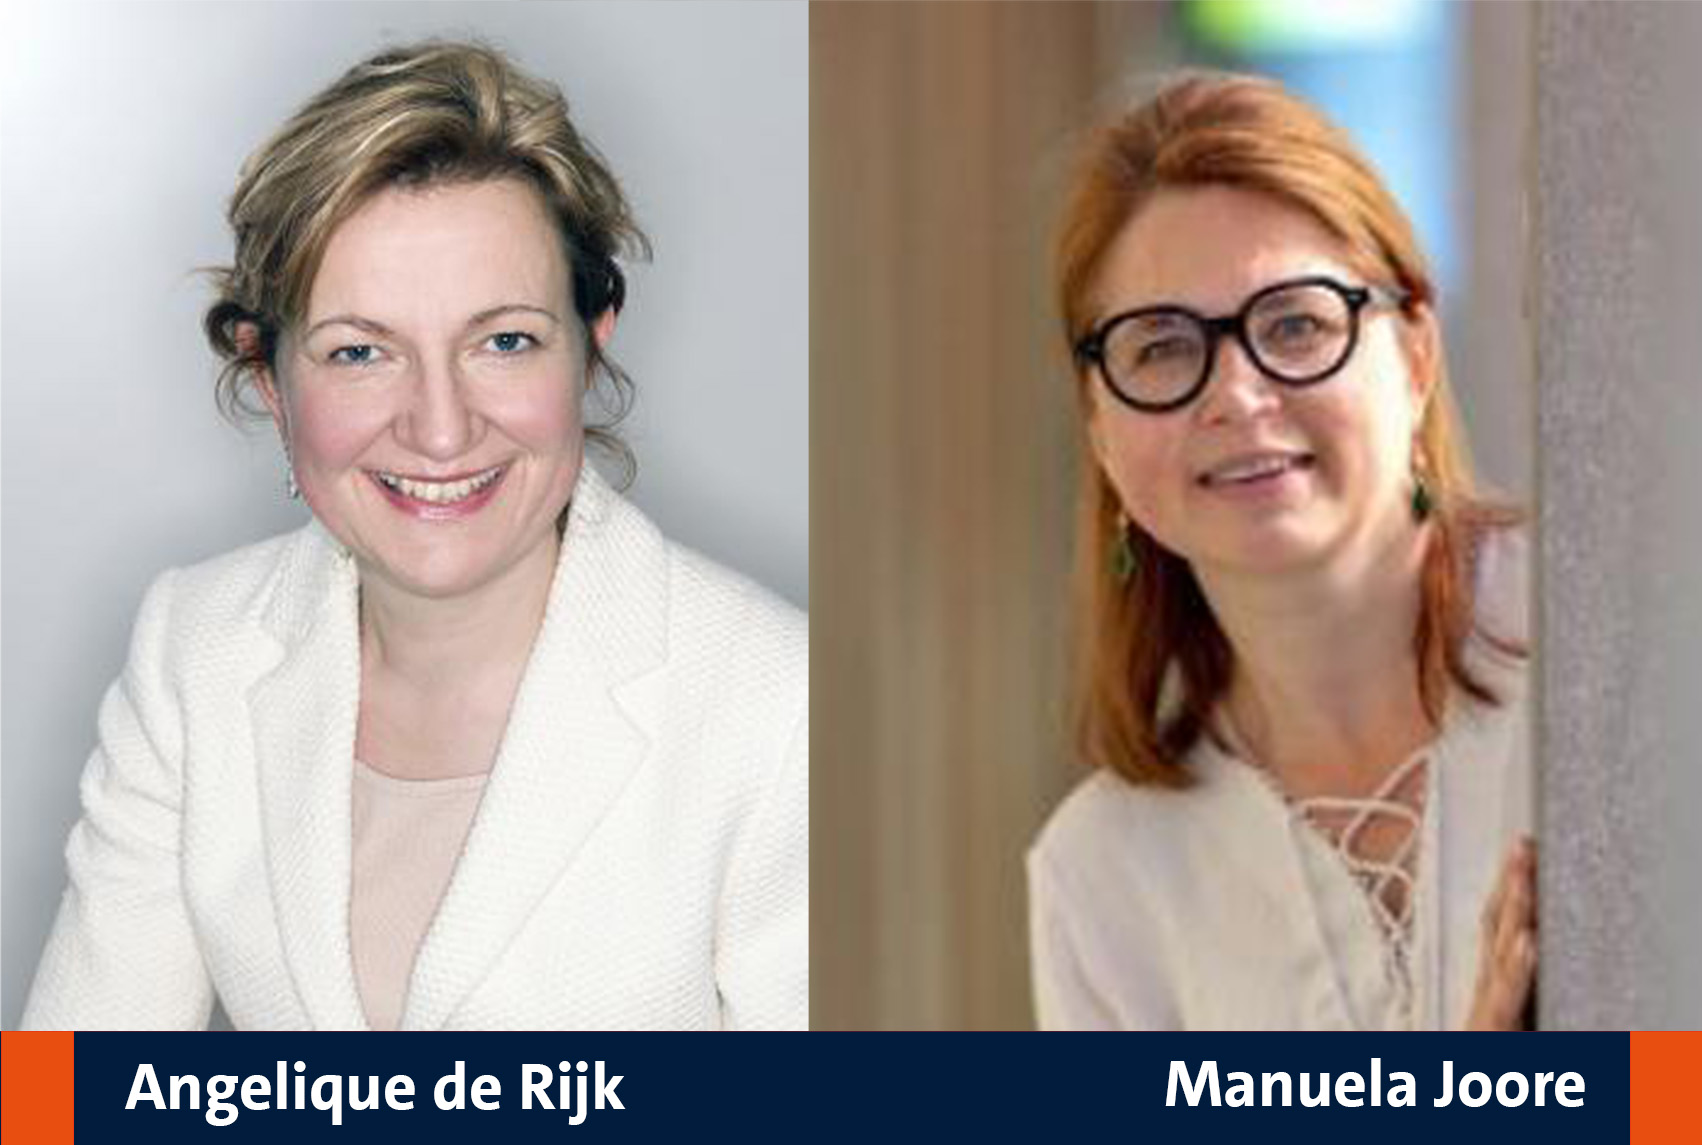 Manuela Joore and Angelique de Rijk join committee